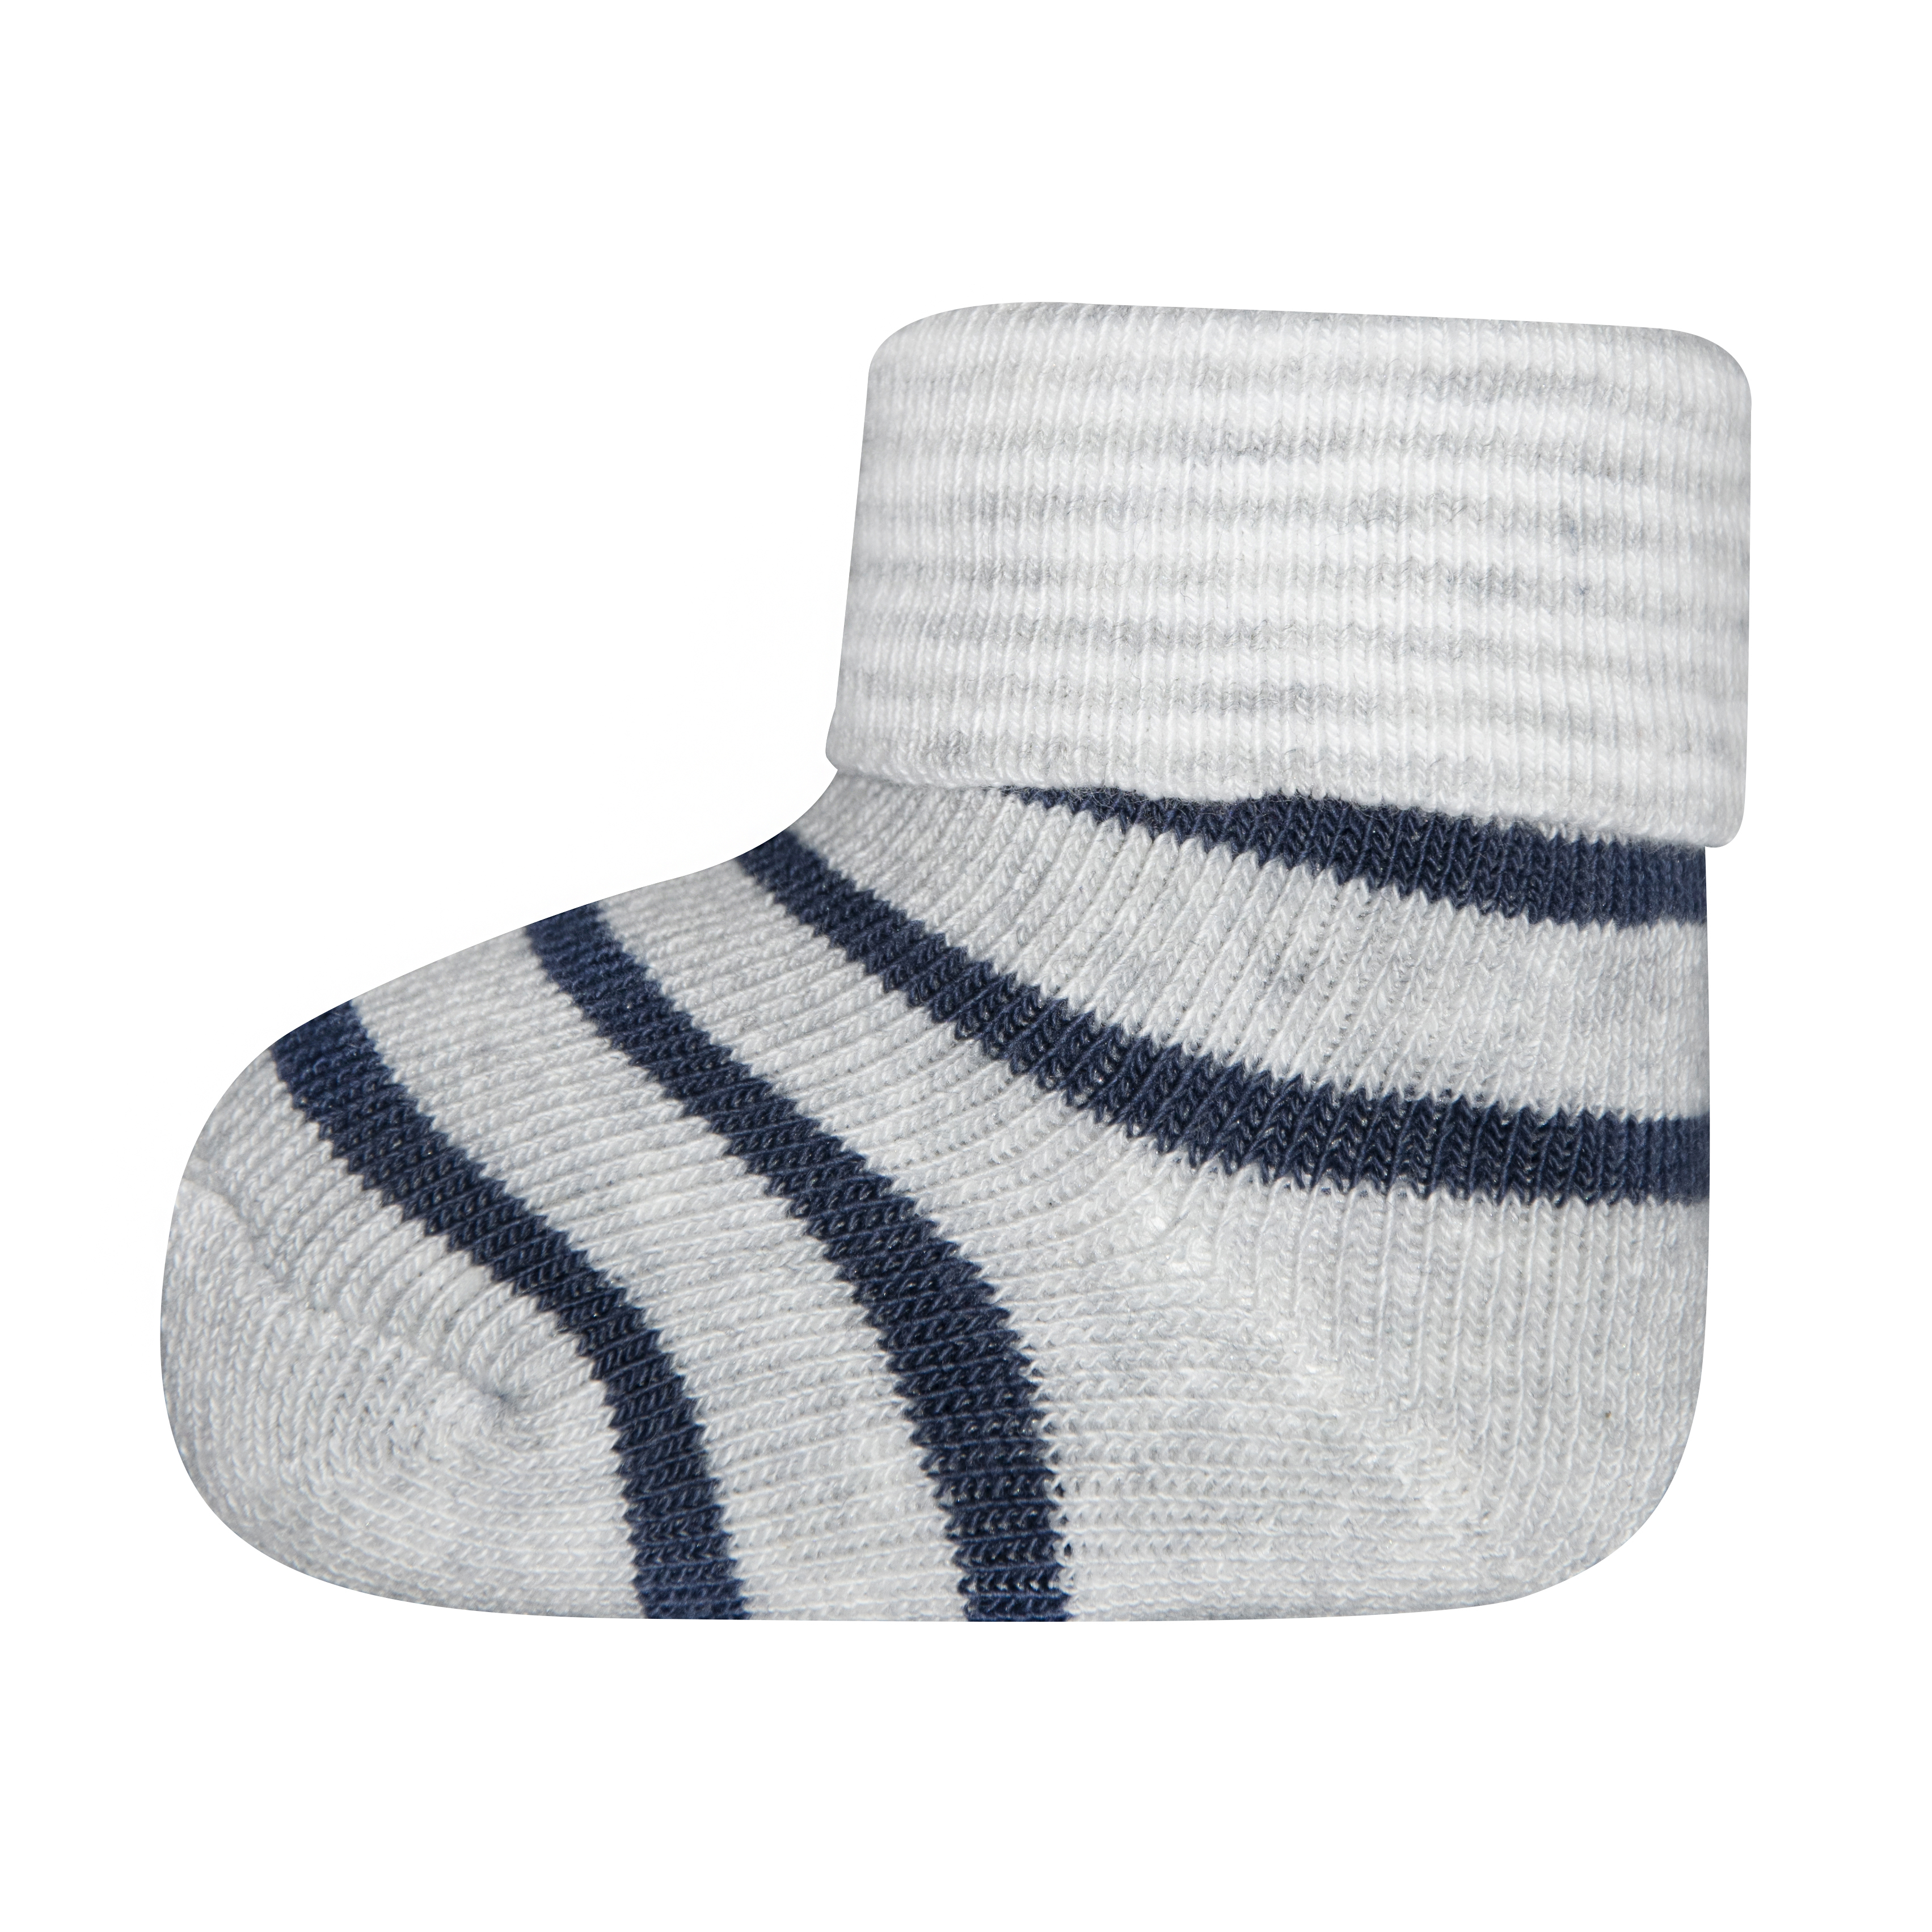 Jungen Erstlings-Socken (Dreierpack) Grau Ringel